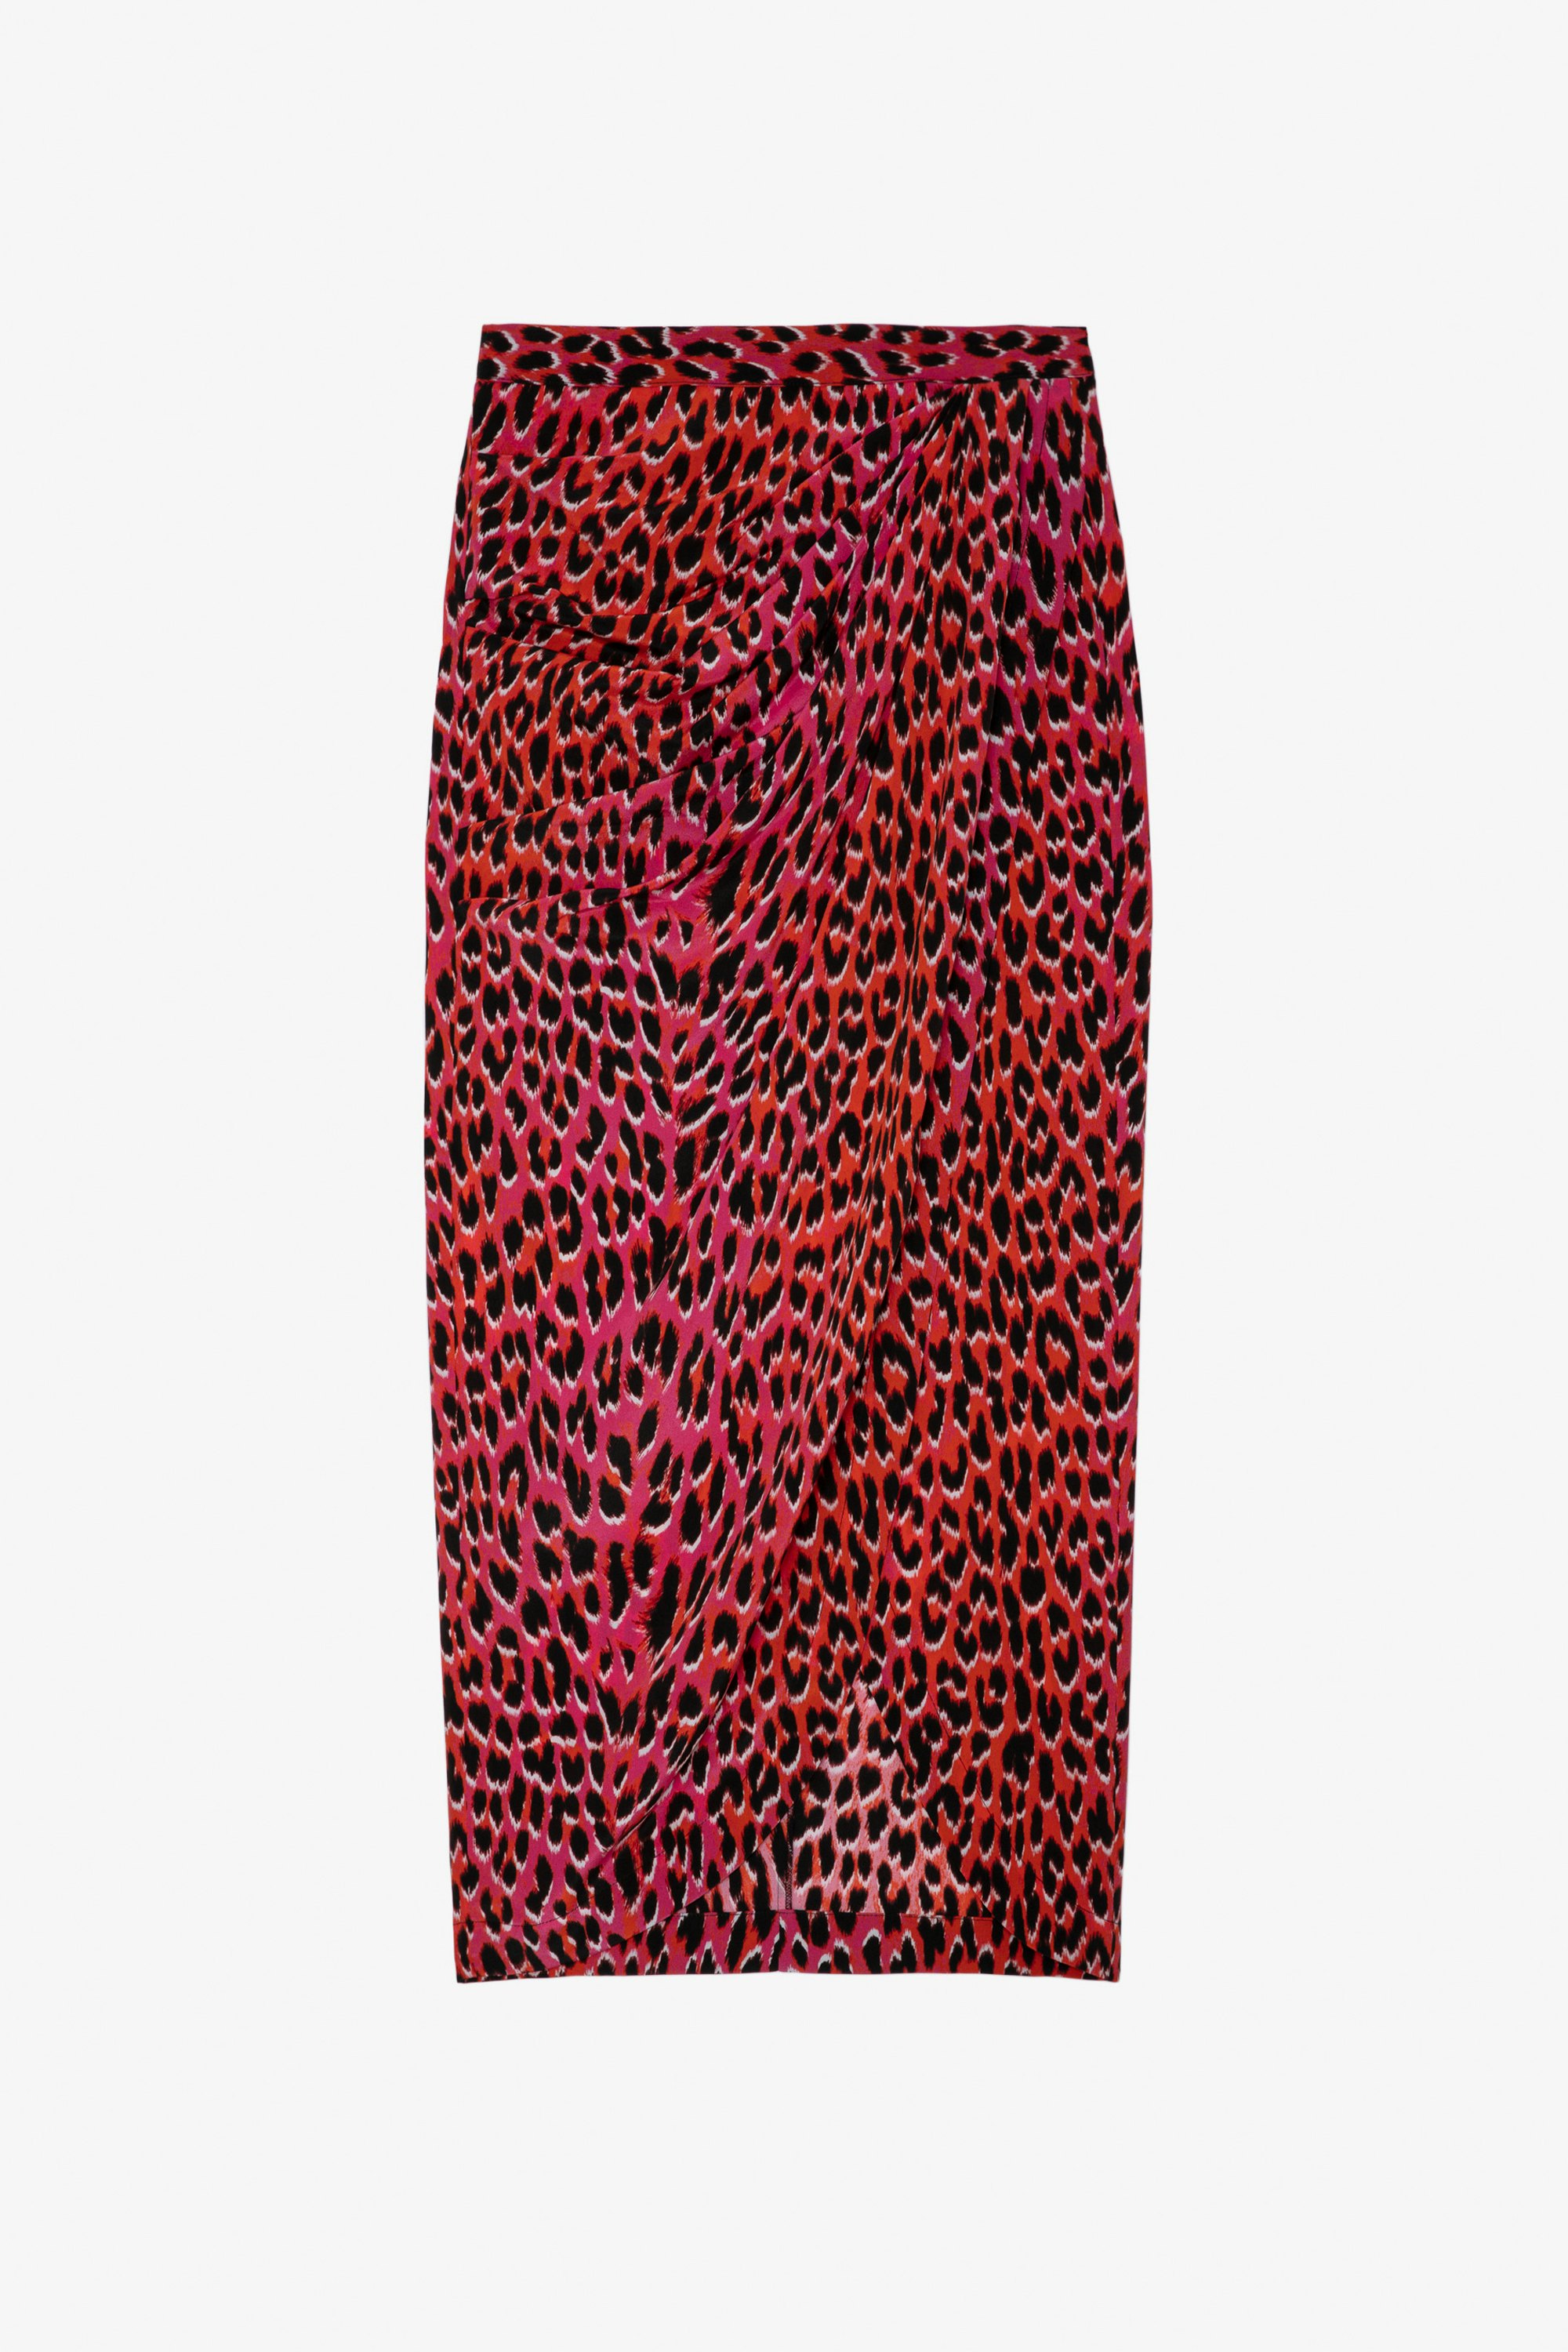 Seidenrock Jamelia Leopardenmuster - Langer drapierter Damenrock aus rosa Seide mit Leopardenmuster